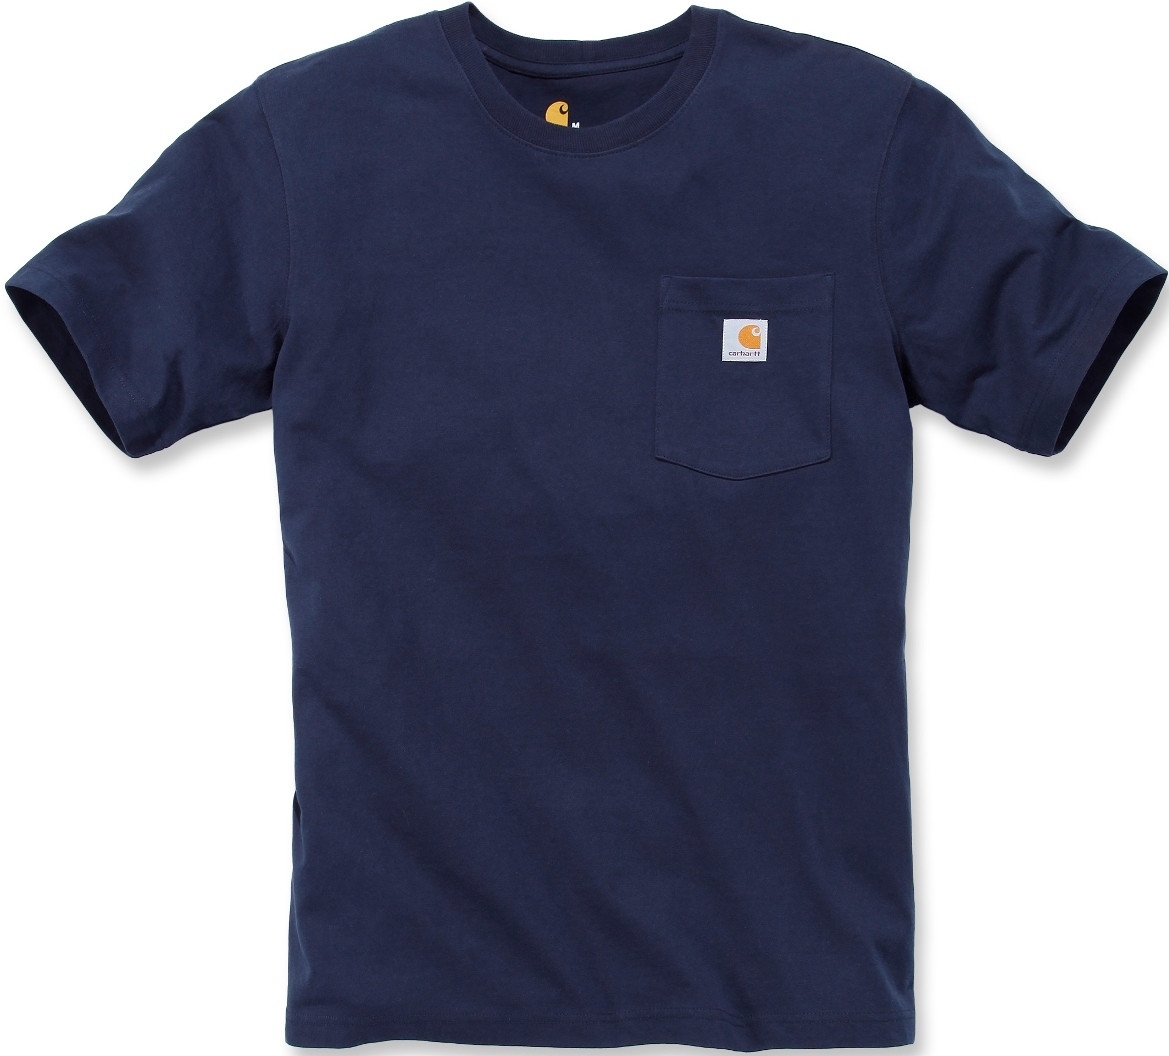 Футболка Carhartt Workwear Pocket, темно-синий футболка женская carhartt workwear pocket синий